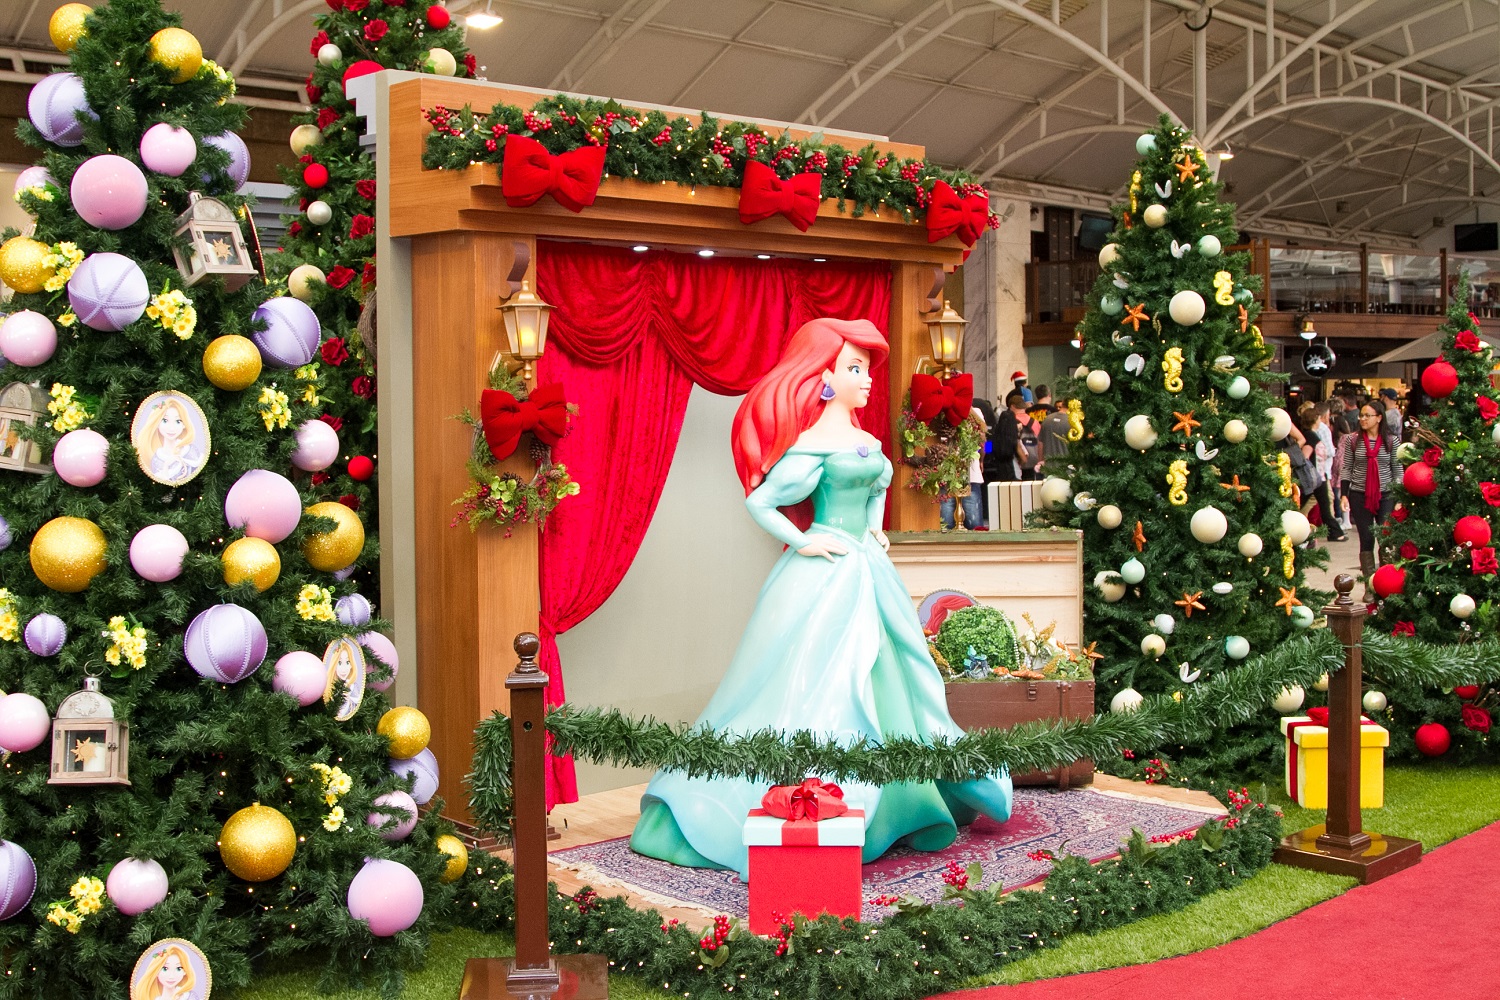 Enfeites de Natal das Princesas Disney! « Blog de Brinquedo